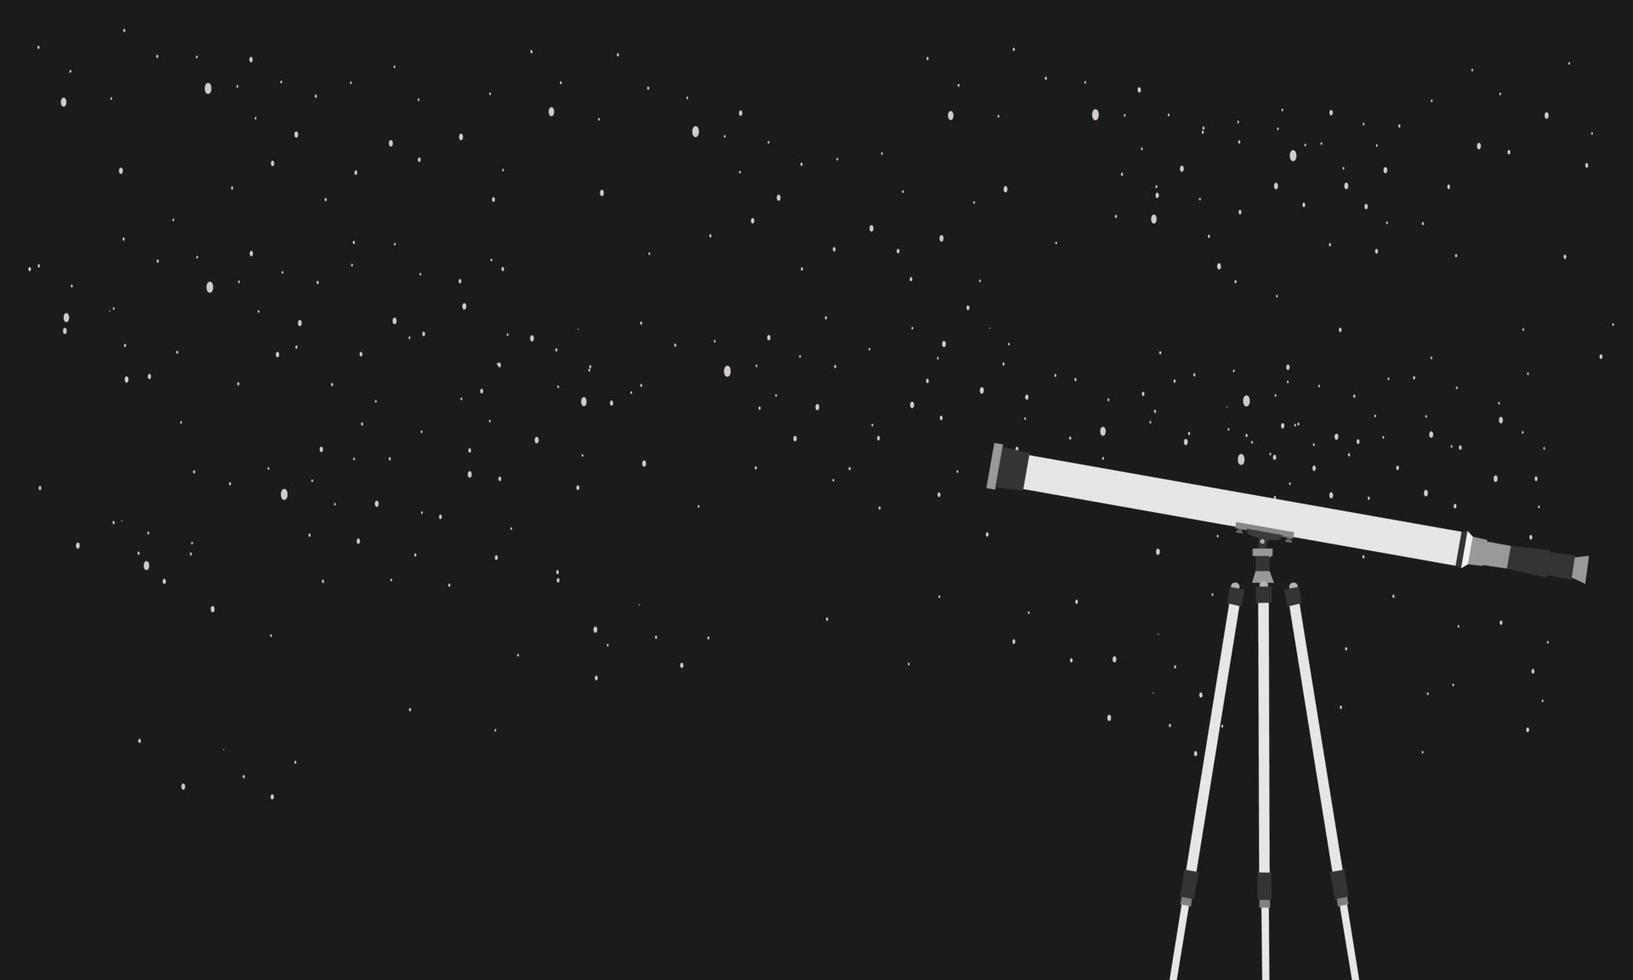 istruzione futuro concetto vettore piatto illustration.telescope si trova su libri sullo sfondo del cielo notturno